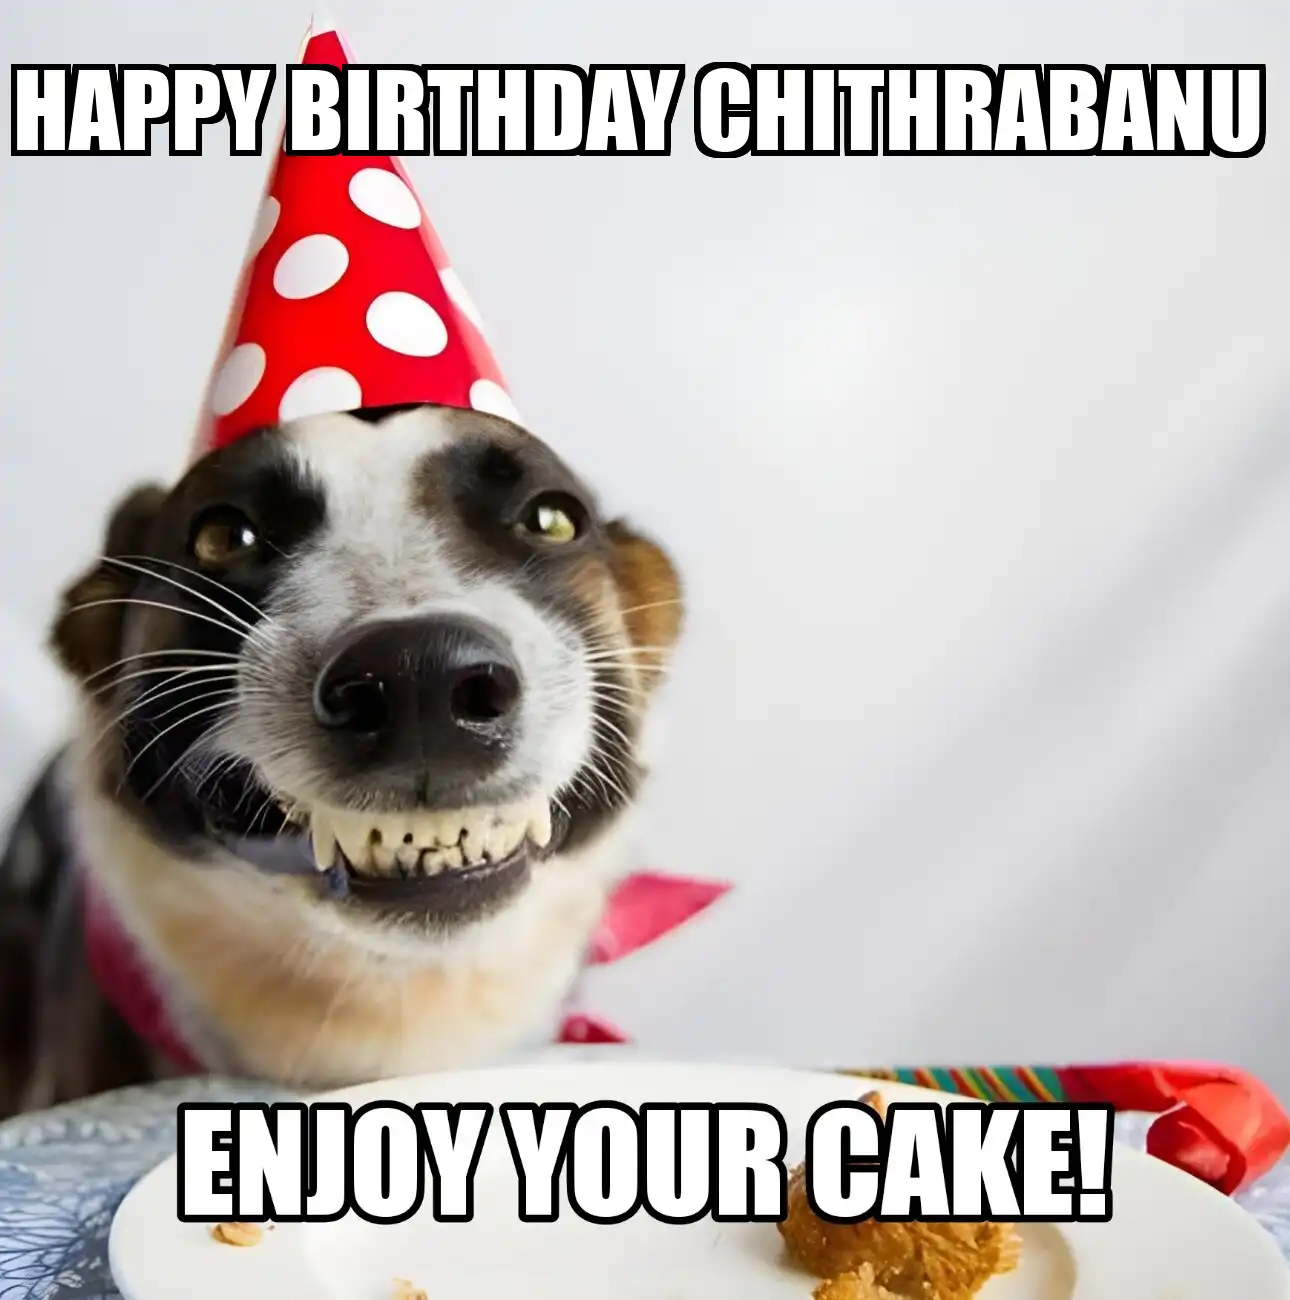 Happy Birthday Chithrabanu Enjoy Your Cake Dog Meme